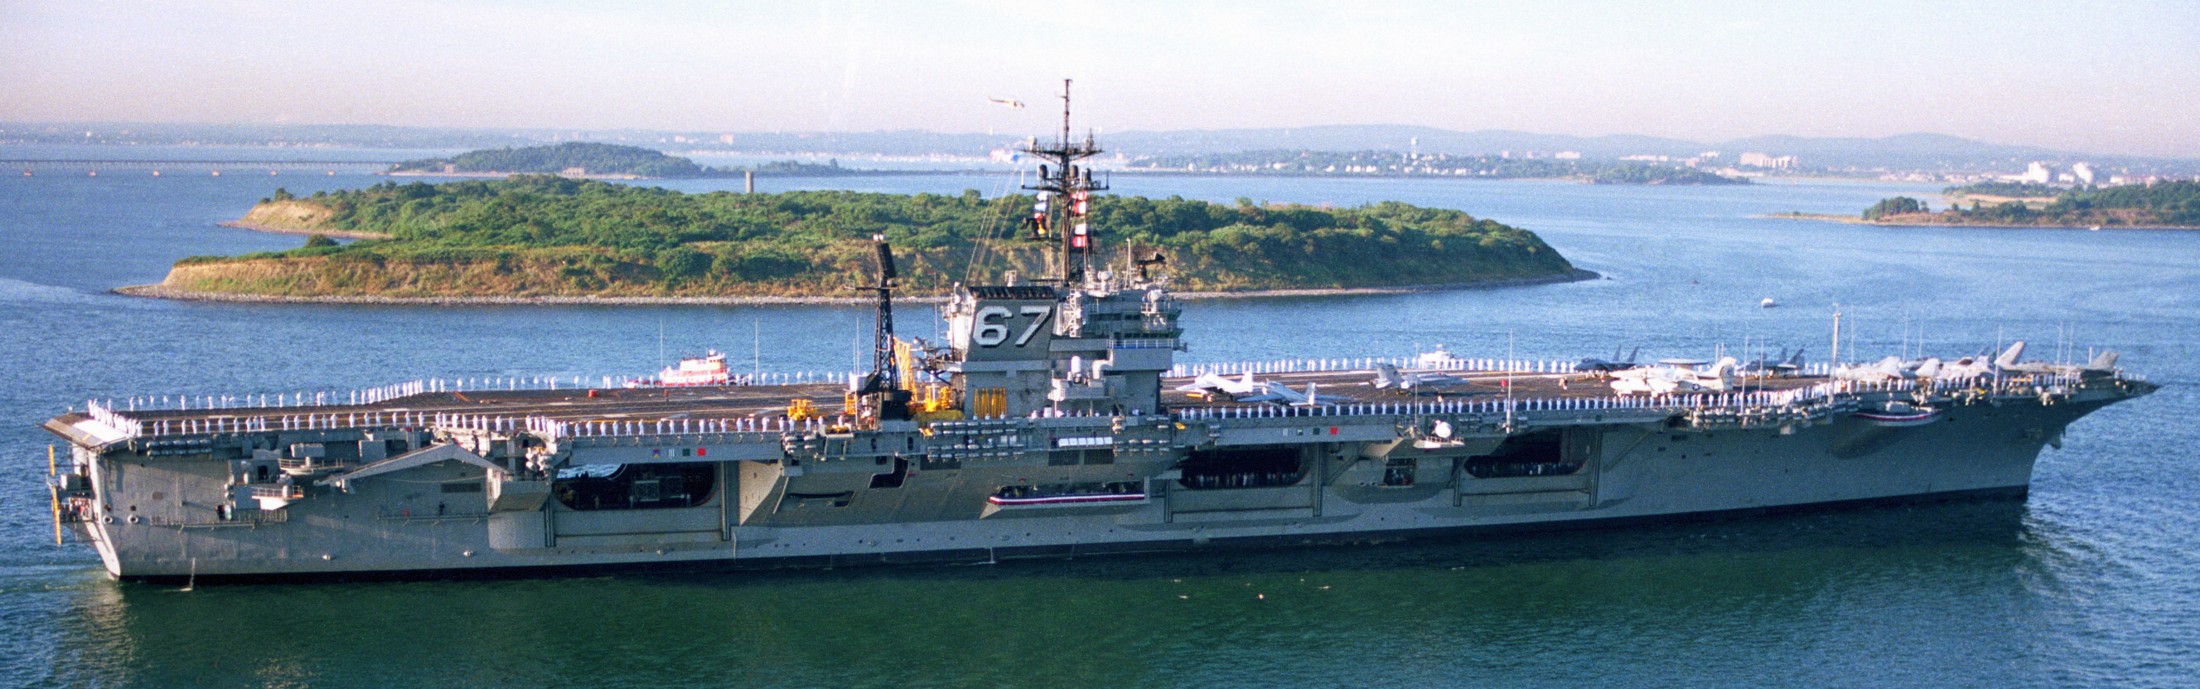 cv-67 uss john f. kennedy aircraft carrier us navy 106